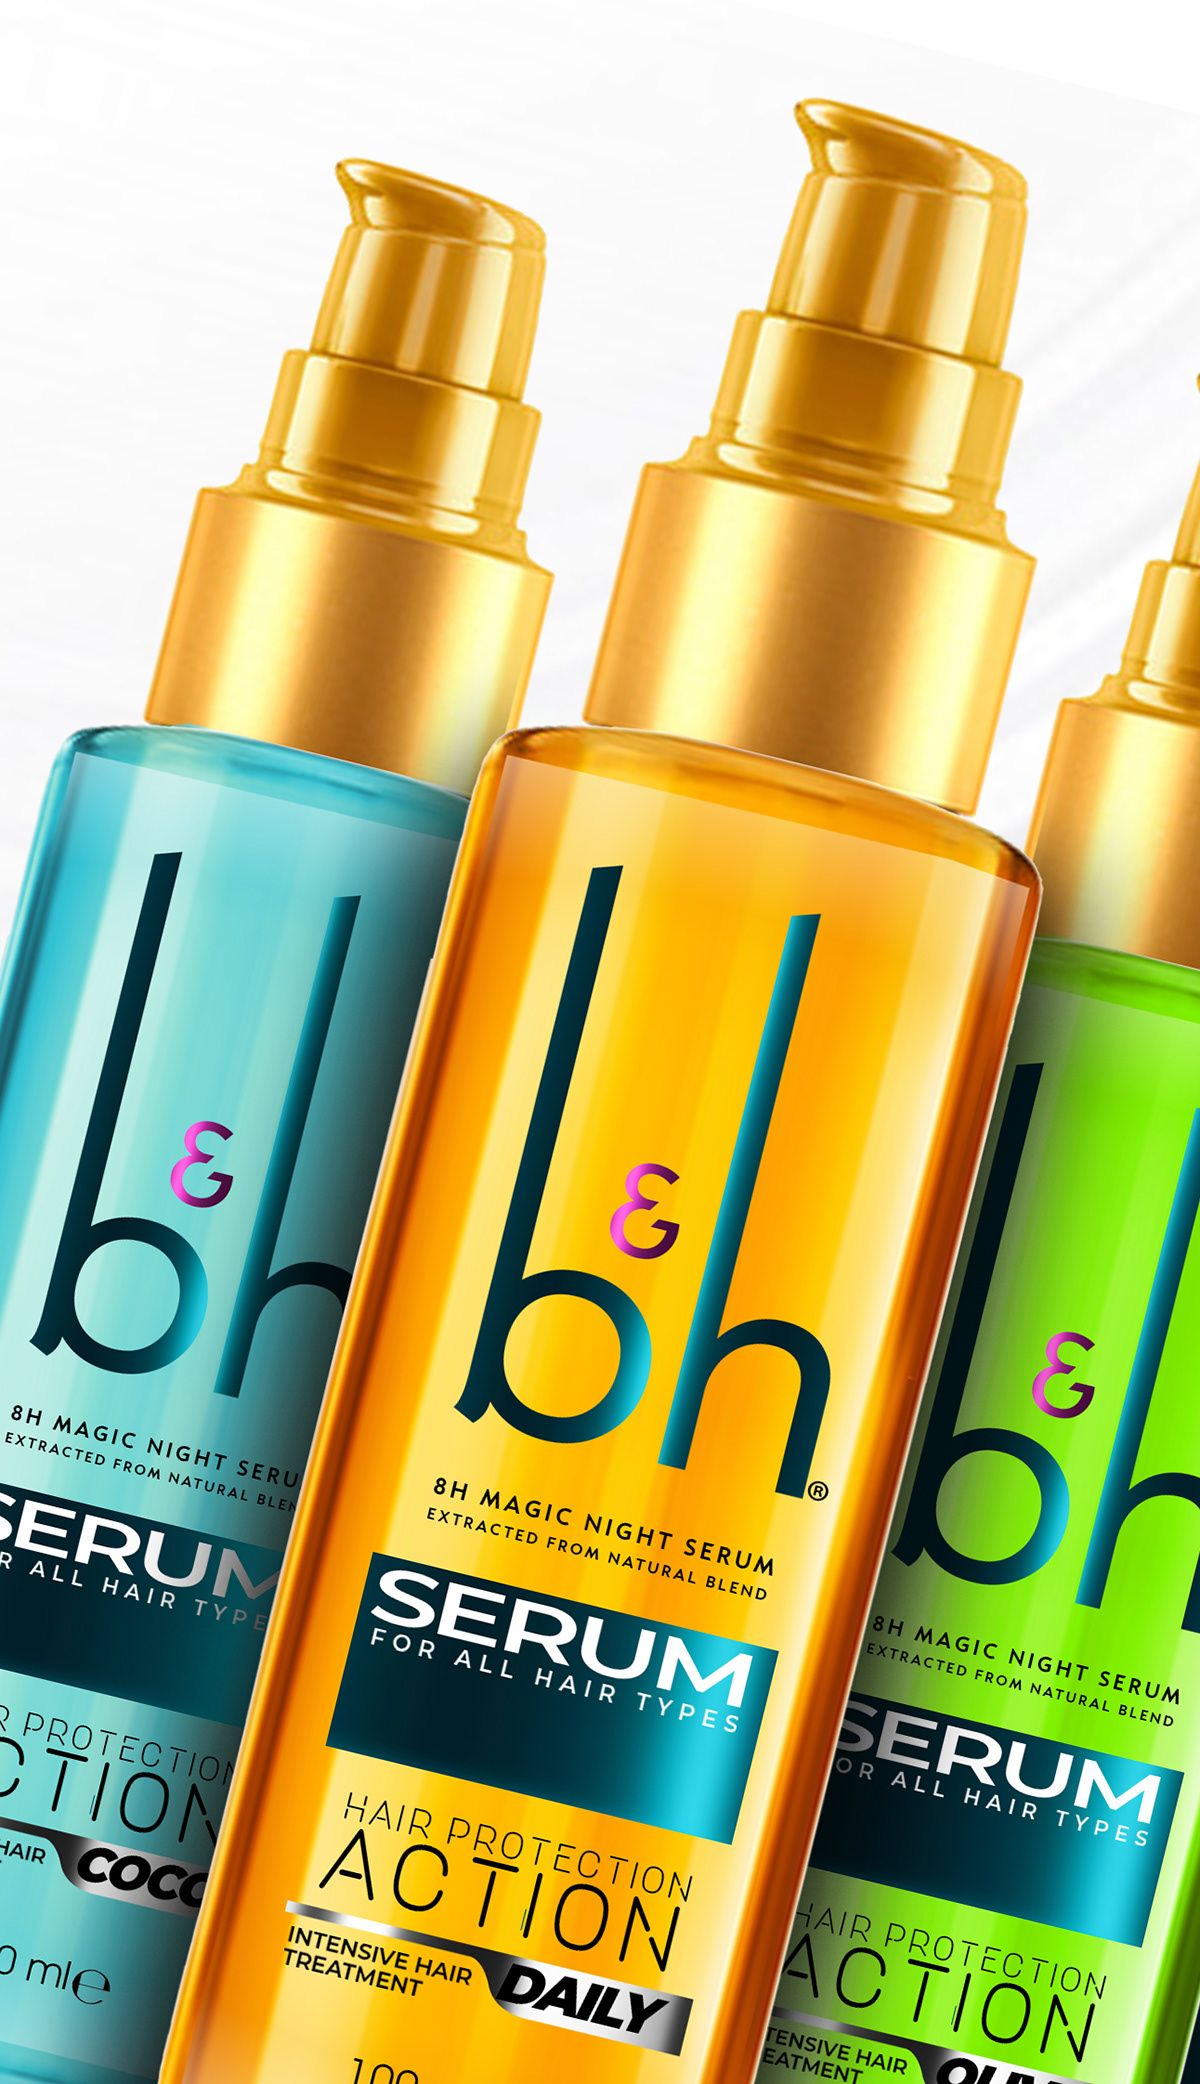 serum packaging hair care